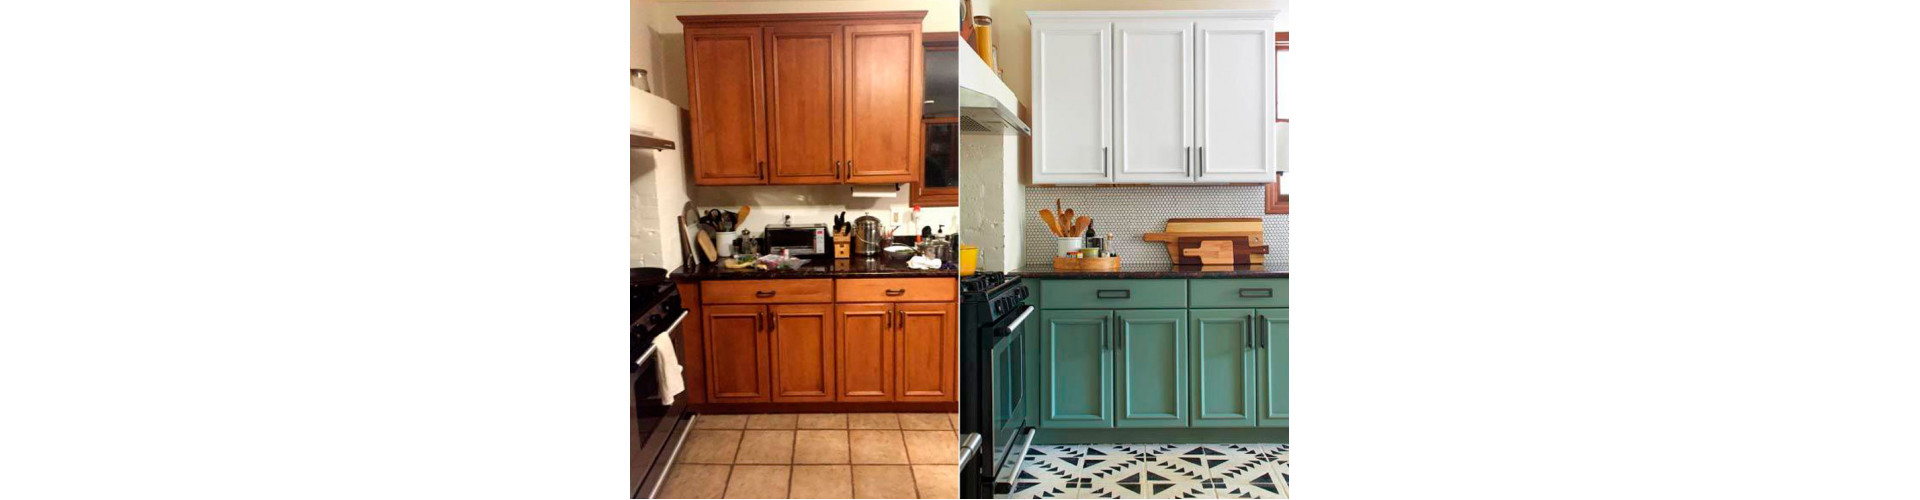 Идеи как обновить внешний вид кухонной мебели